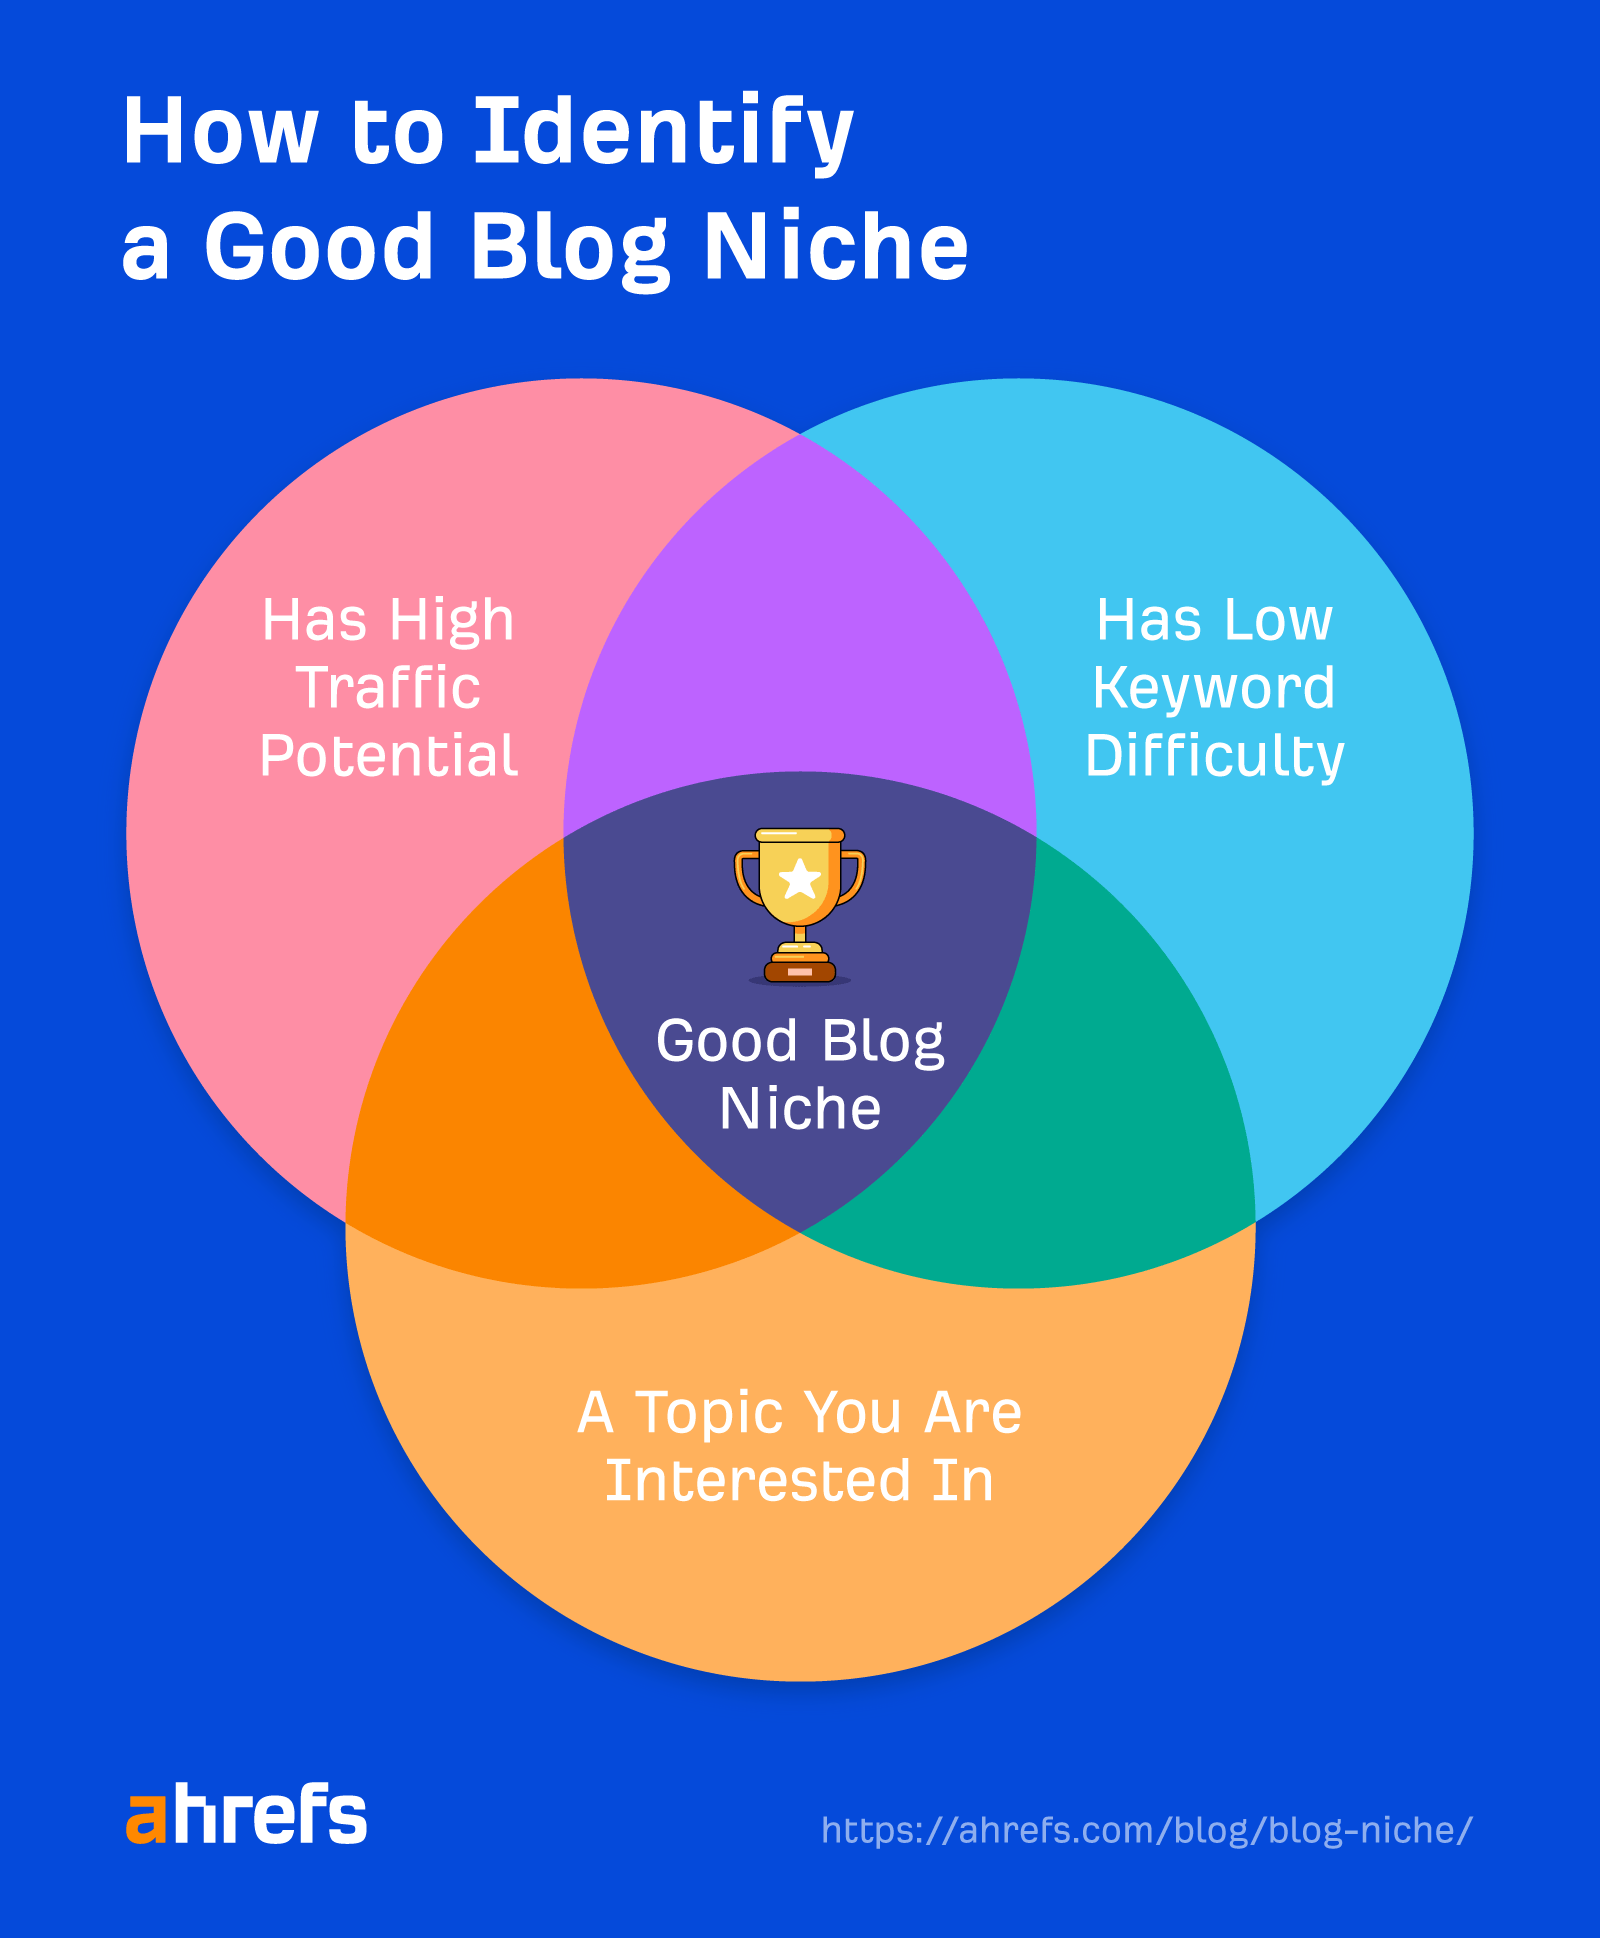 Diagramme de Venn montrant les caractéristiques d'une bonne niche de blog, via Ahrefs Blog